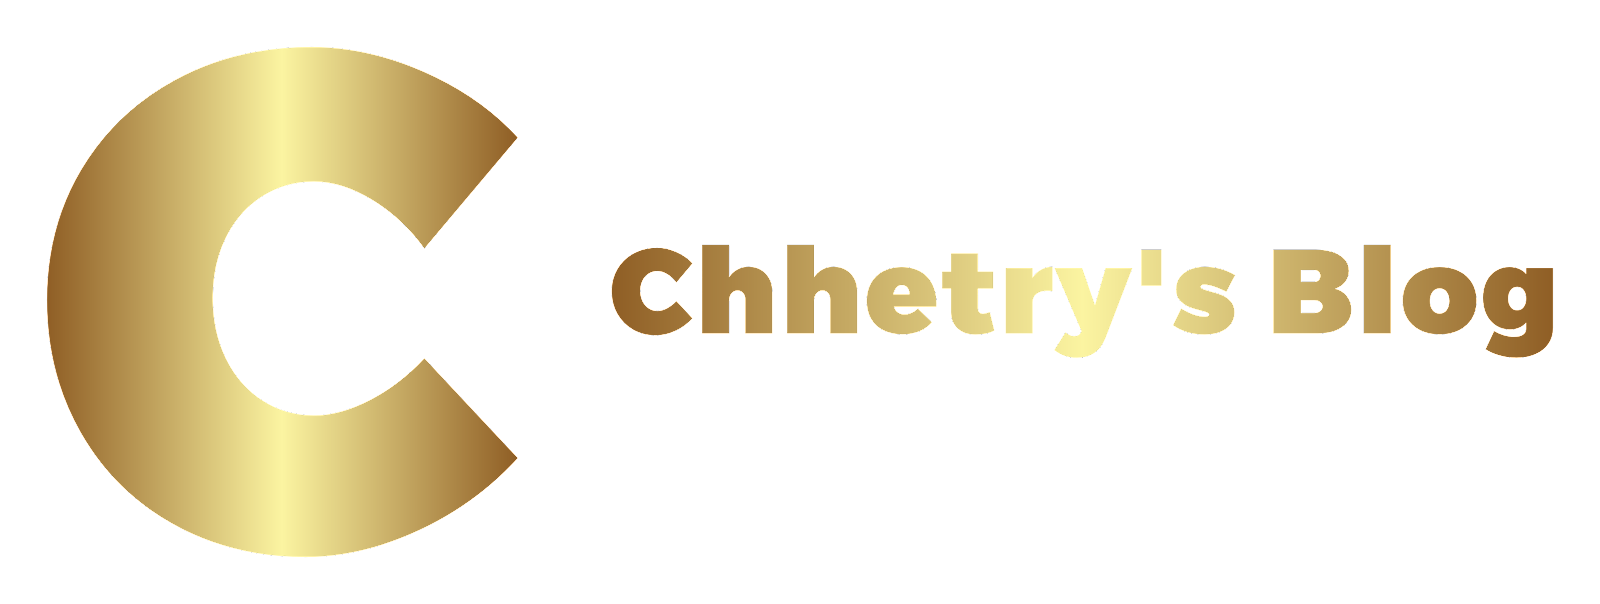 Chhetry's Blog